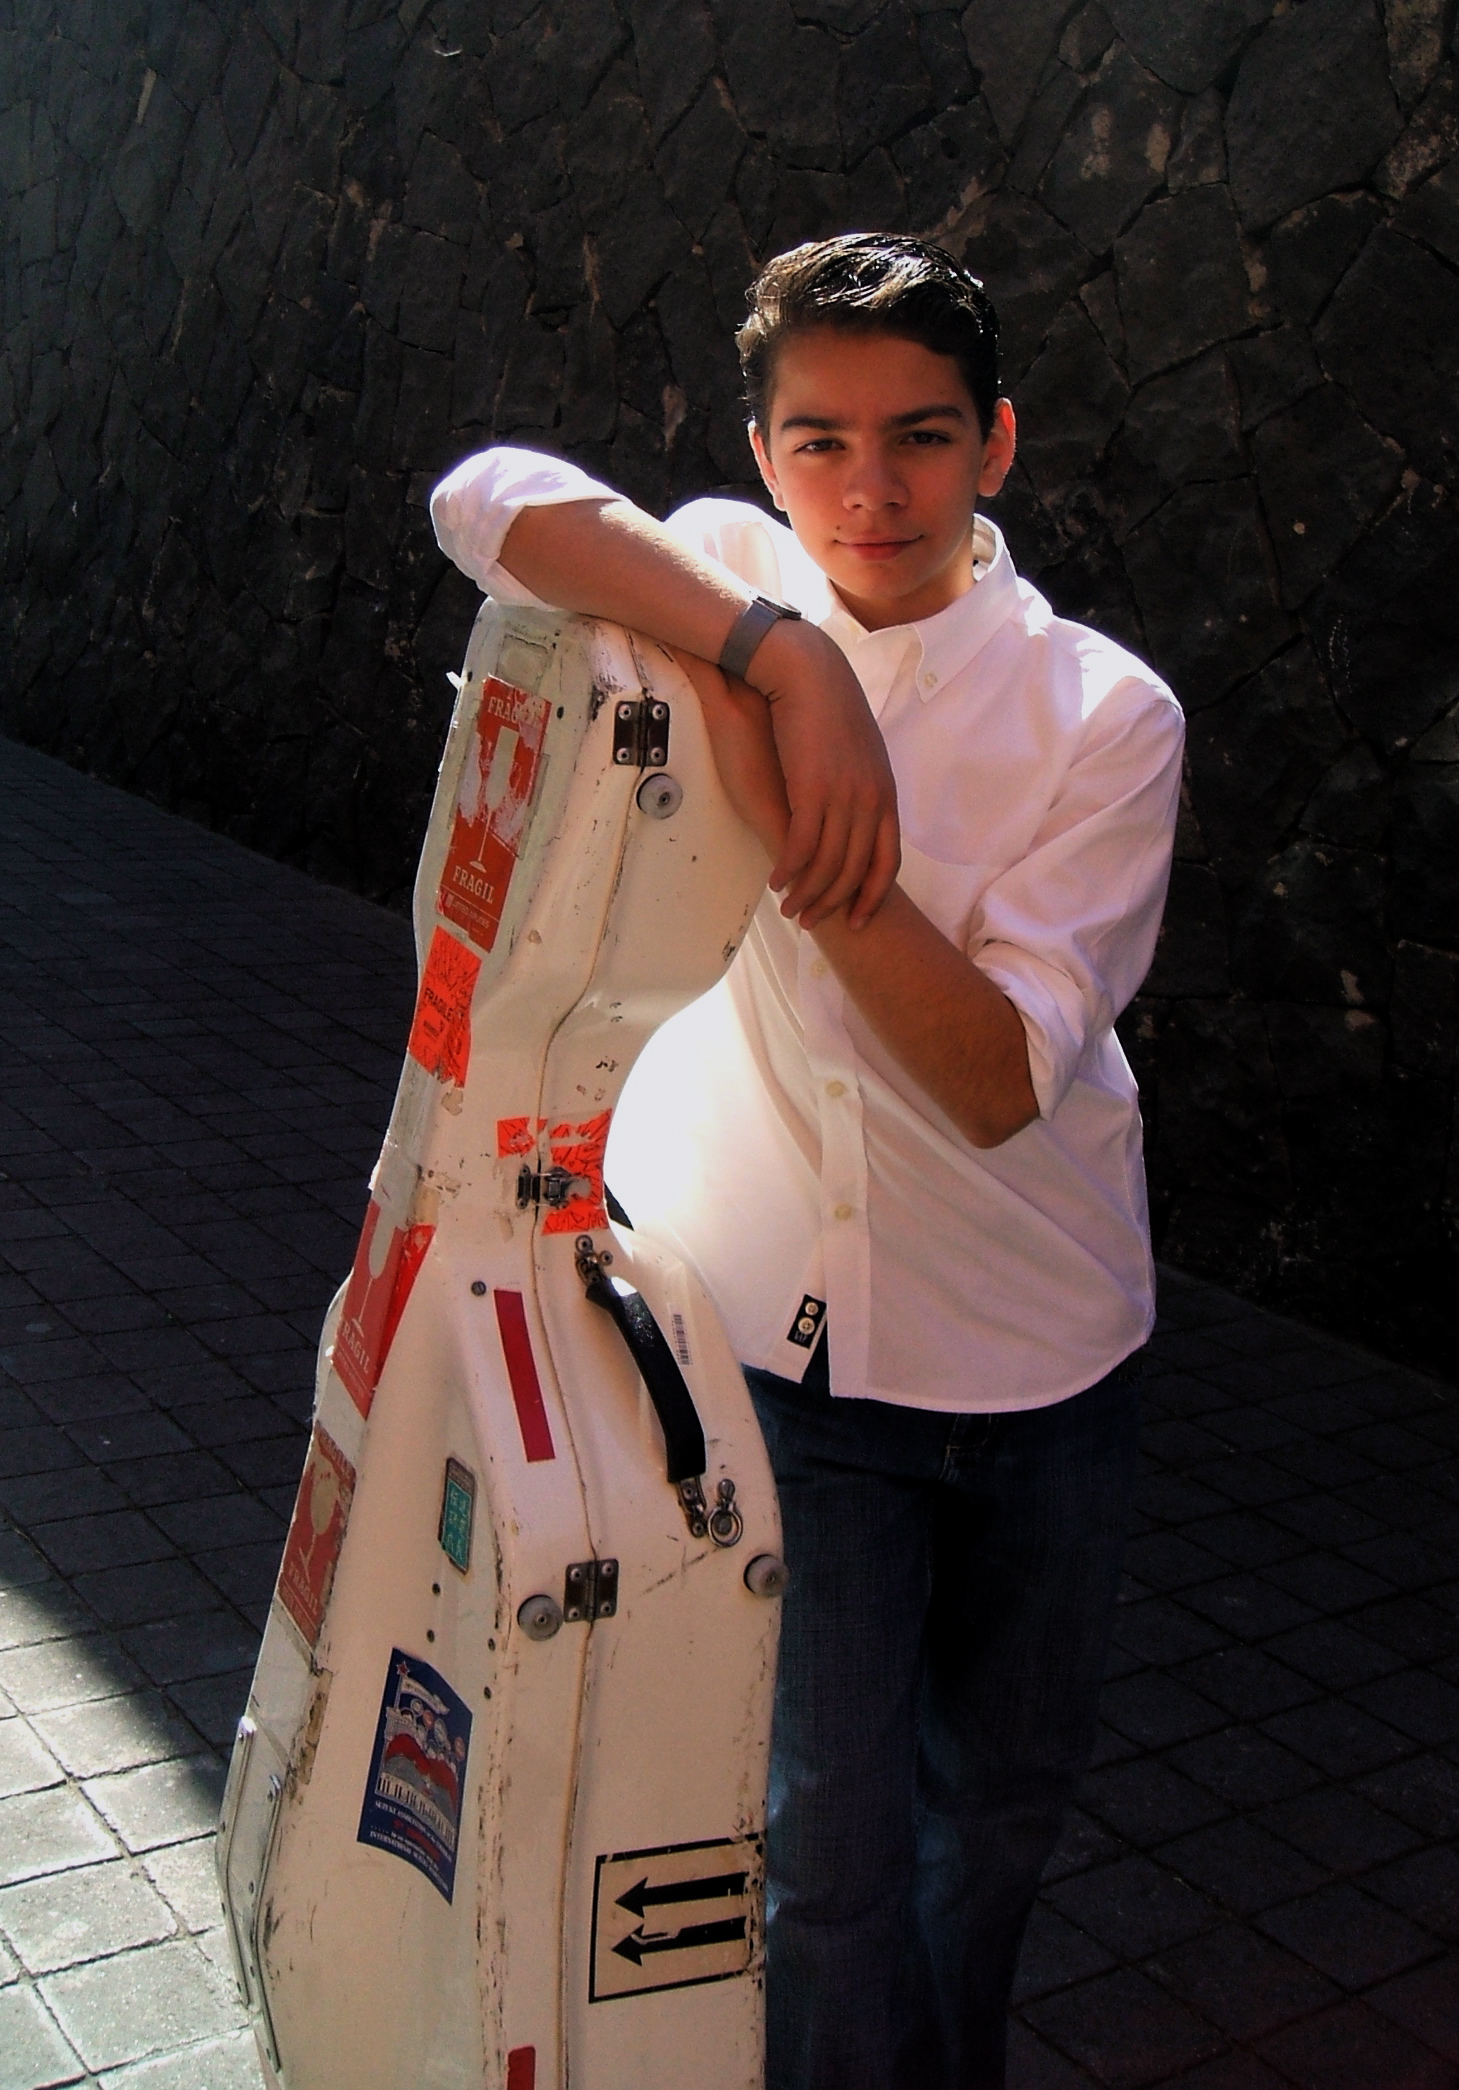 Juan-Salvador Carrasco, 12, after his debut in Mexico City playing the Saint-Saens cello concerto (March 2007).